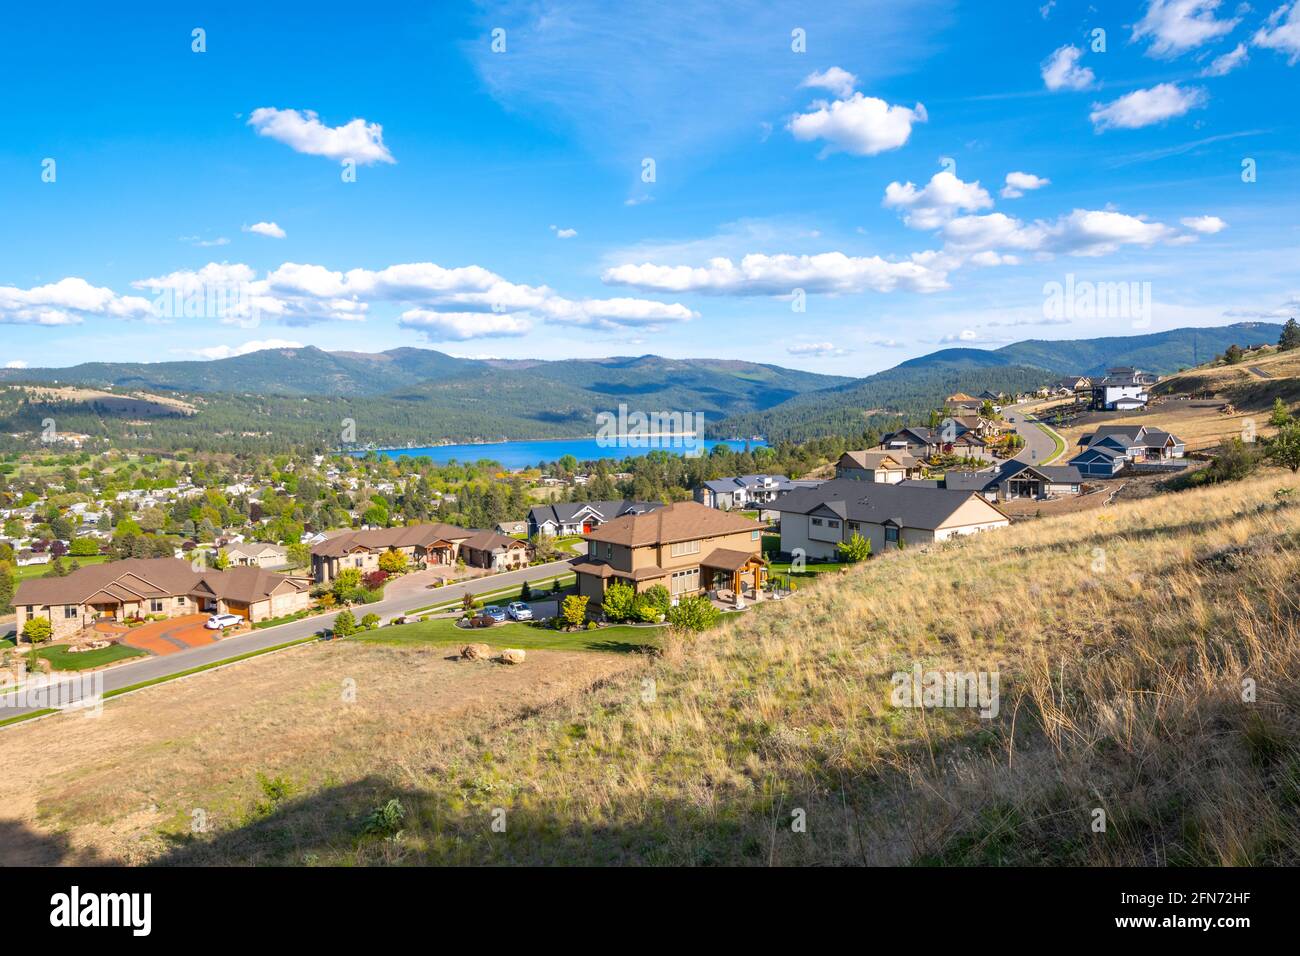 Vista desde una subdivisión de lujo del lago y la ciudad de Liberty Lake, Washington, un suburbio rural de Spokane, Washington, Estados Unidos Foto de stock